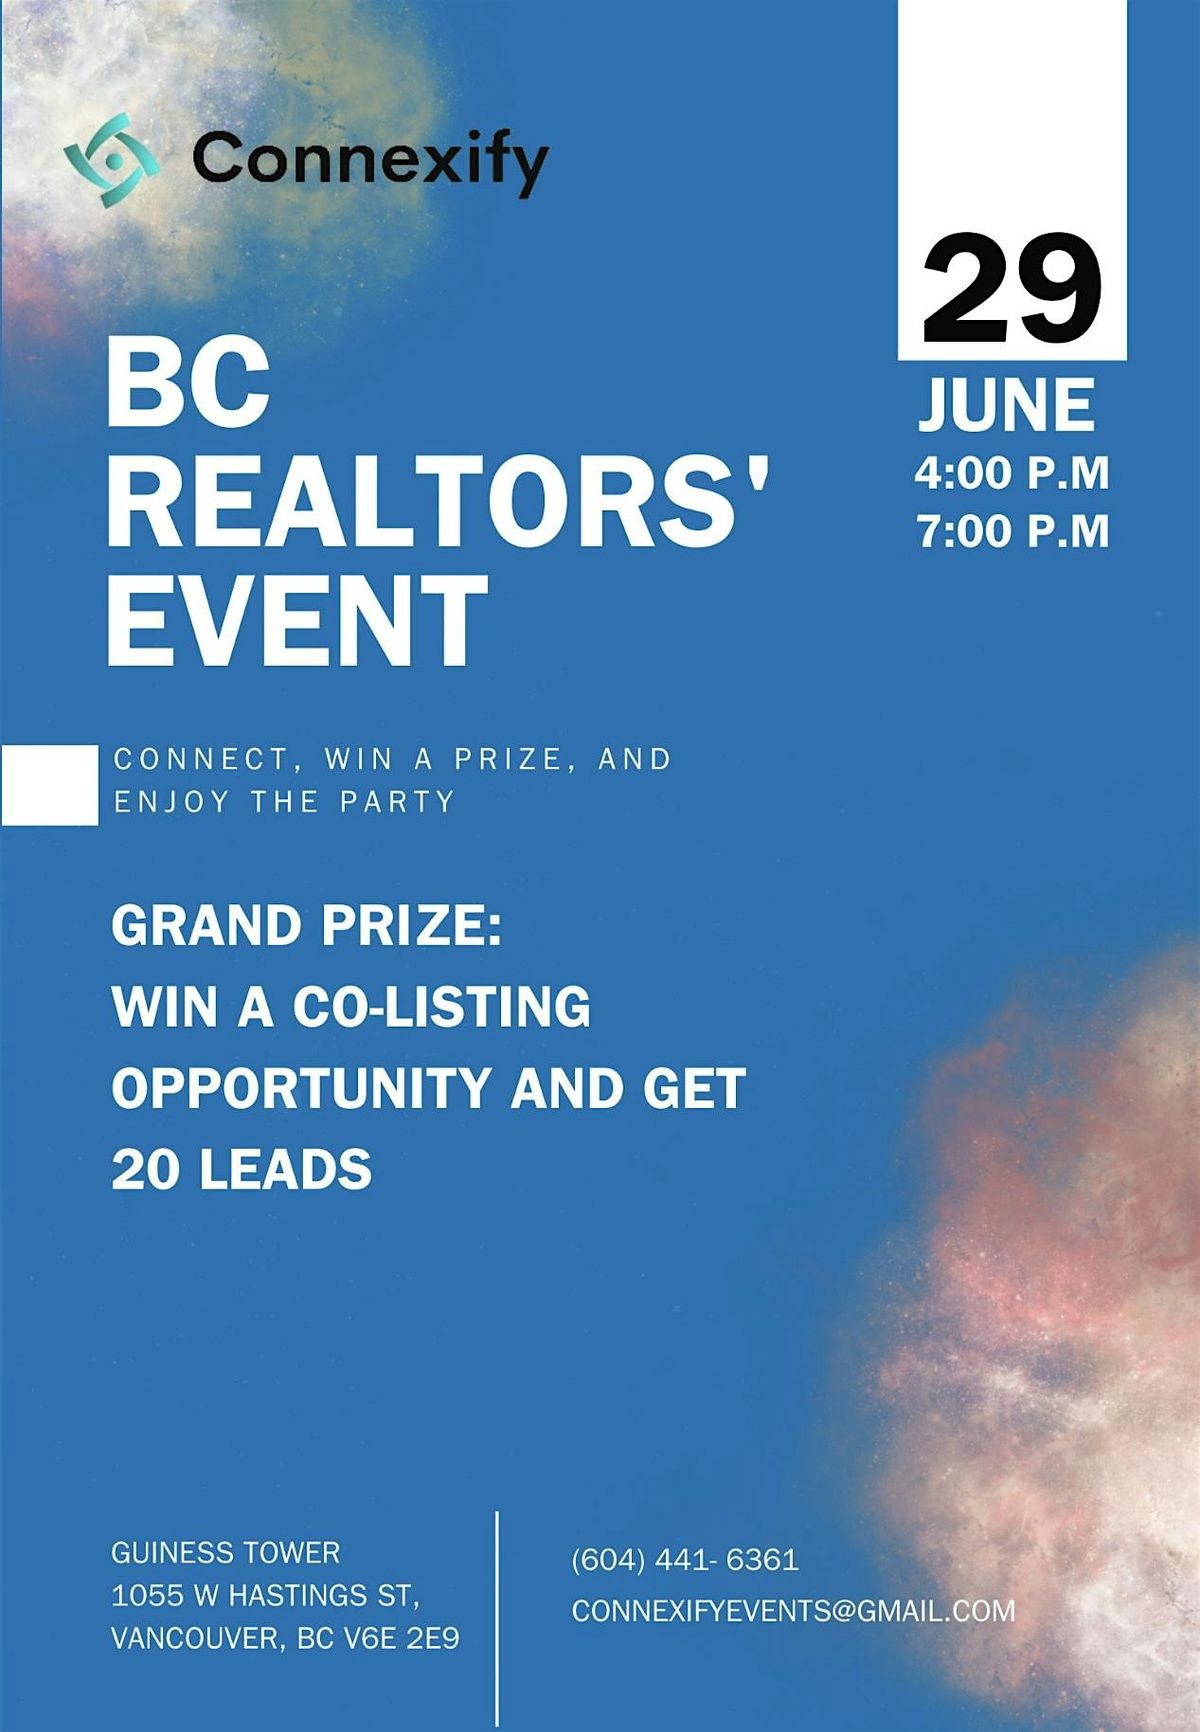 Exclusive BC Realtors' Event